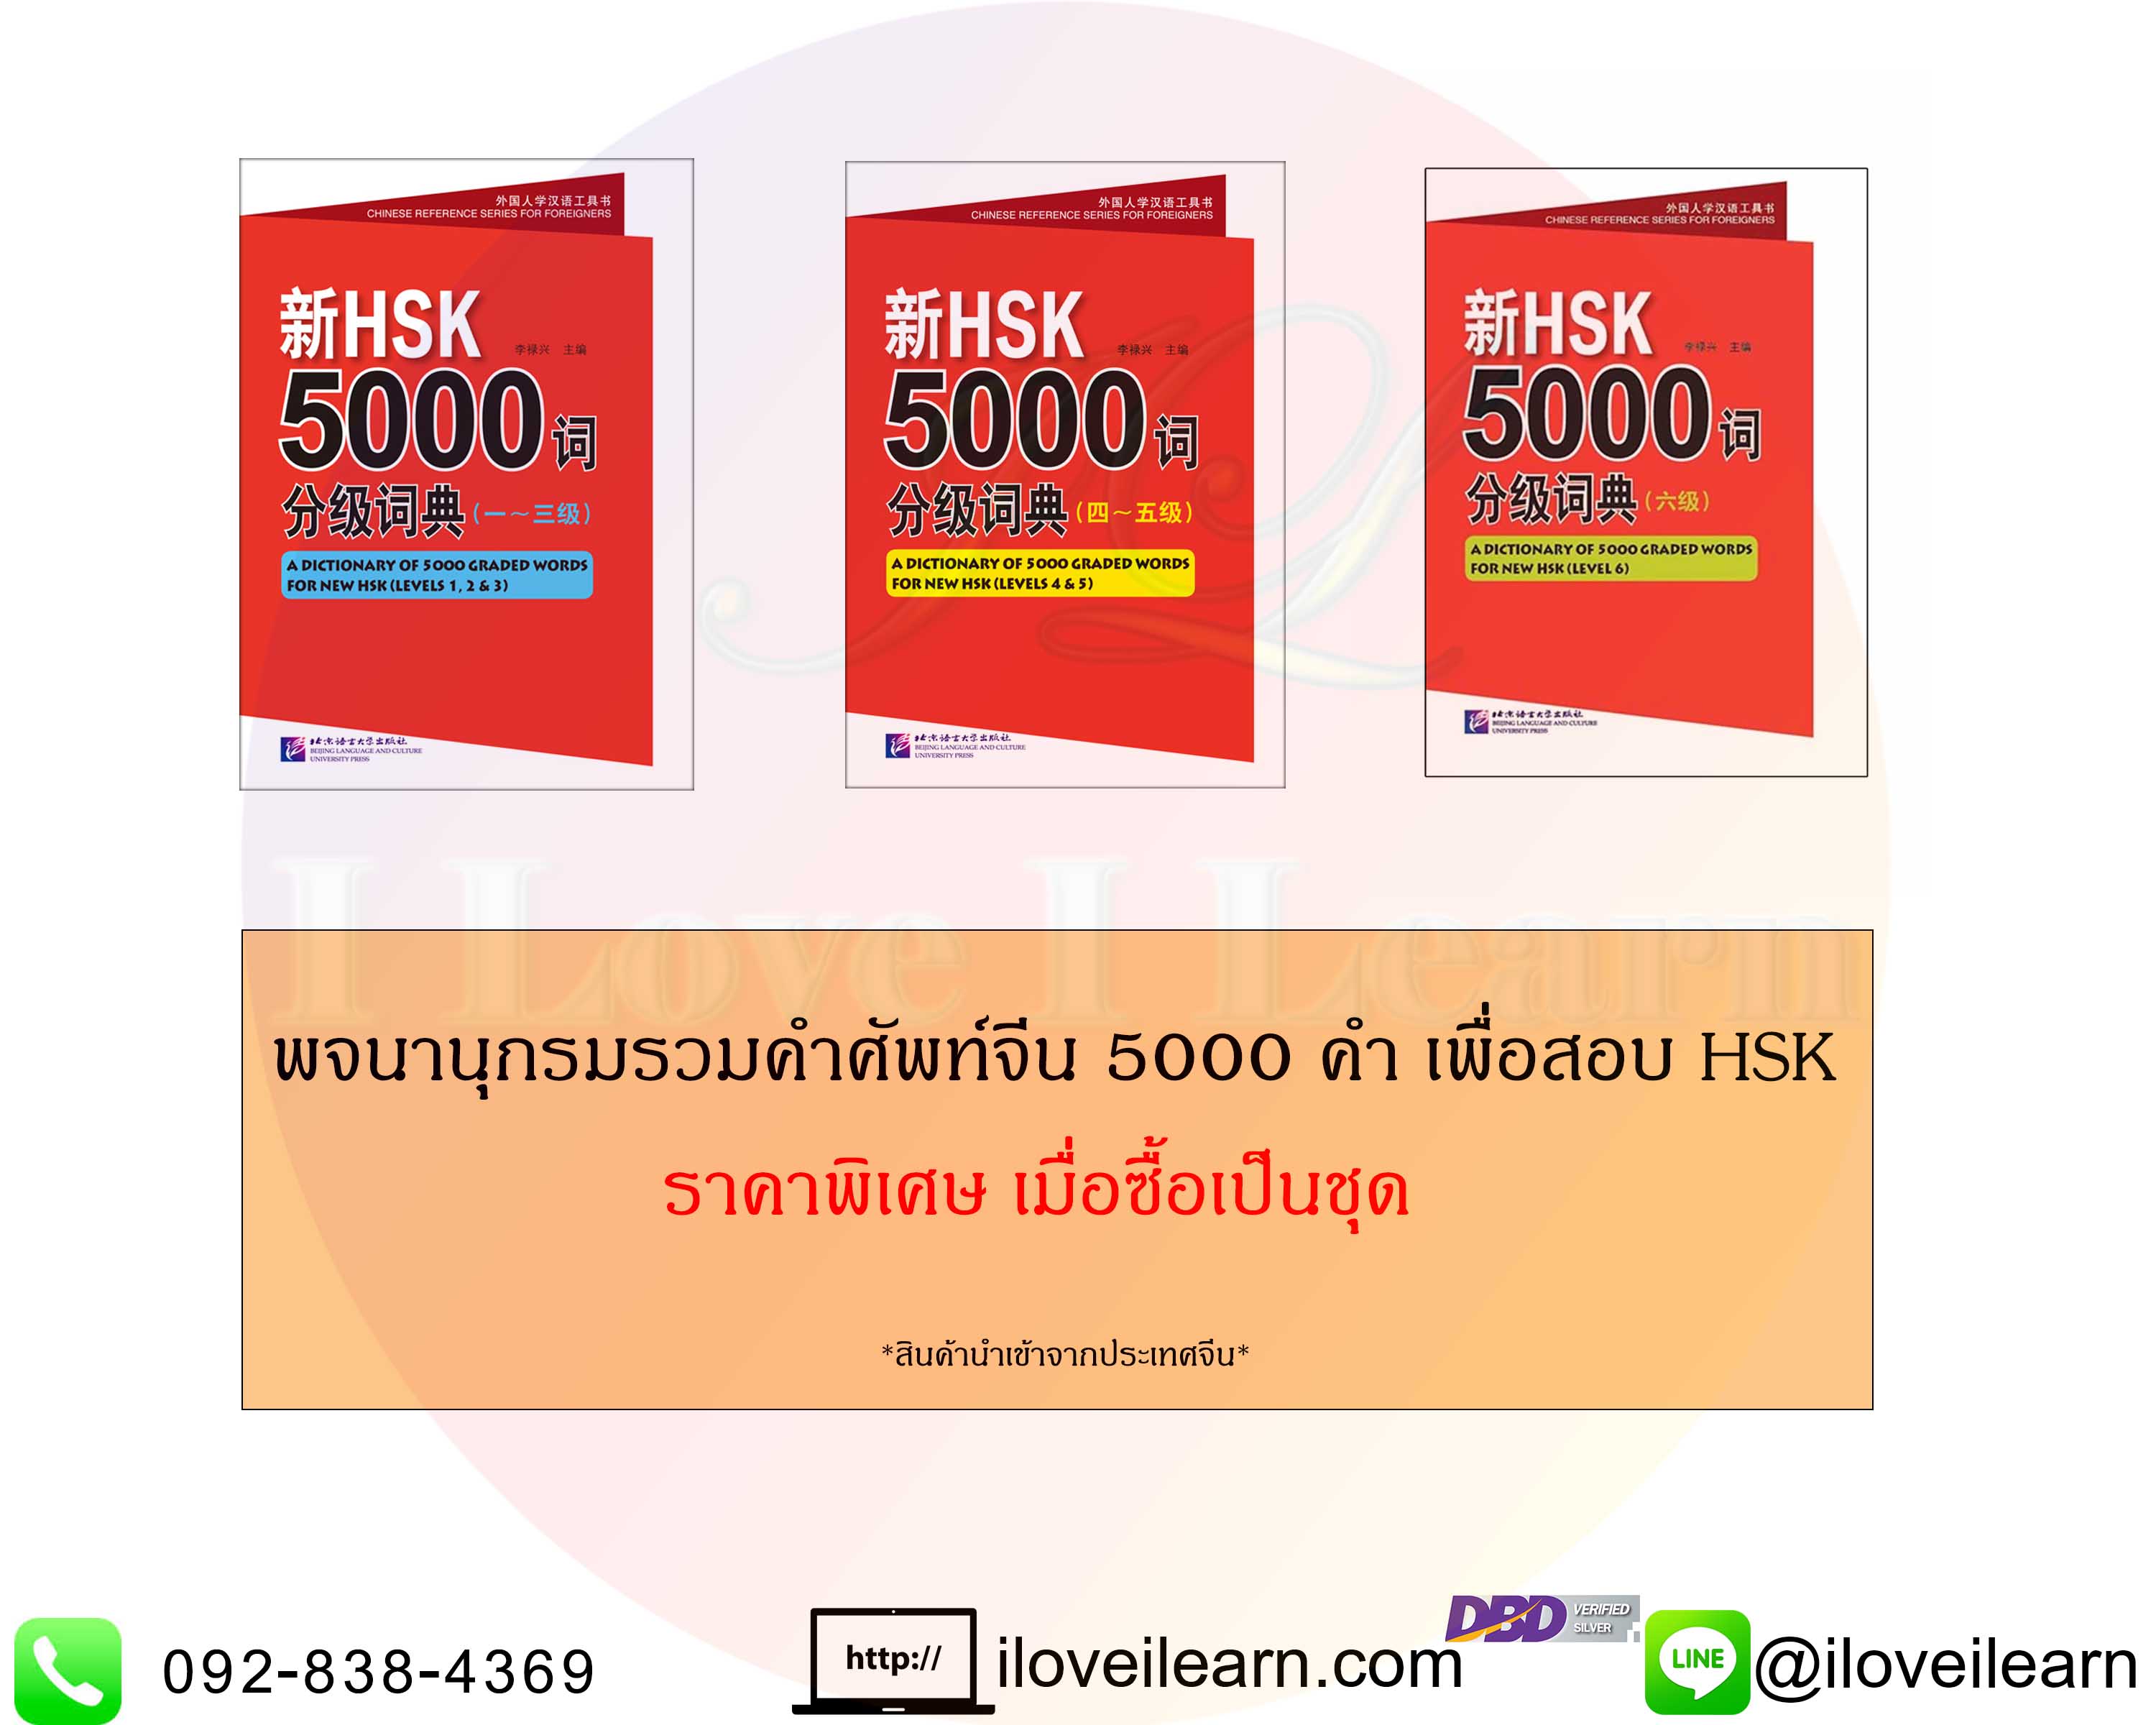 ชุดหนังสือพจนานุกรมรวมคำศัพท์จีน HSK 5000 คำ เพื่อทำข้อสอบ HSK A Dictionary of 5000 Graded Words for New HSK  新HSK5000词分级词典 ประกอบด้วย พจนานุกรมรวมคำศัพท์จีน 5000 คำ HSK ระดับต้น +MP3 ระดับกลาง ระดับสูง  [[3 เล่ม / ชุด]]